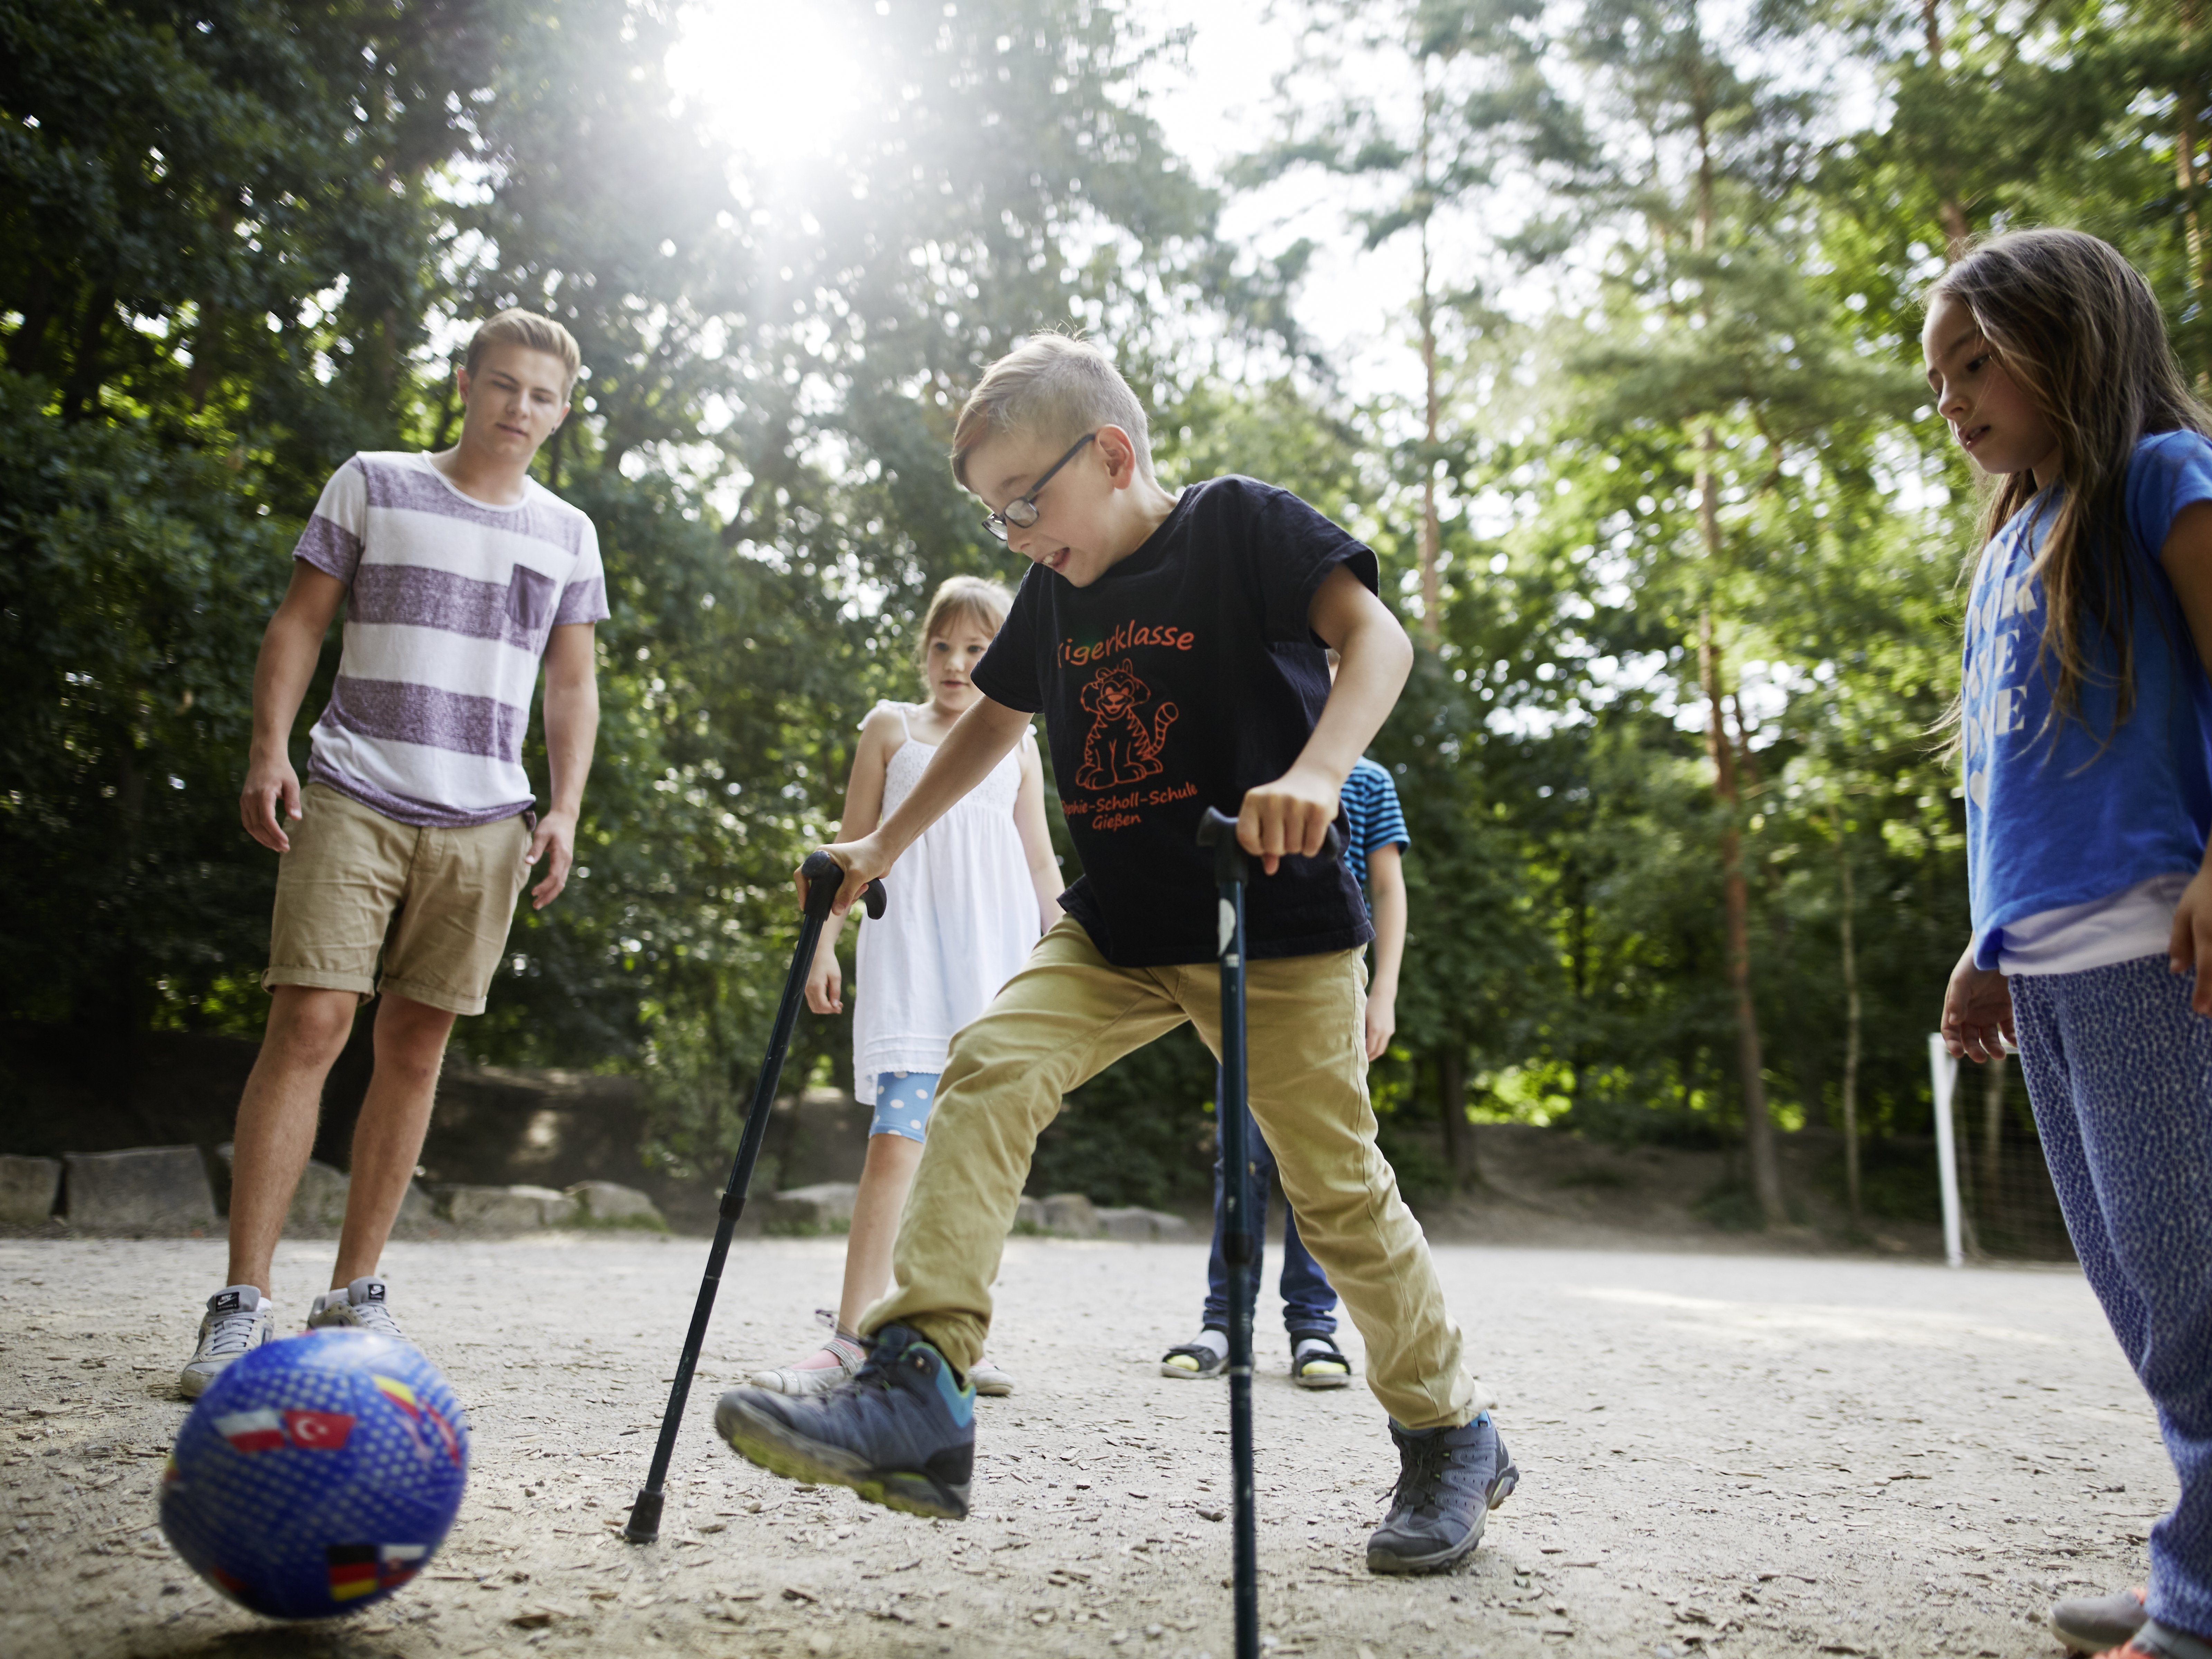 Foto von Kindern auf einem Spielplatz, darunter ein Junge mit Krücken der einen Ball kickt. Dabei ein junger Mann als Betreuer der Lebenshilfe.